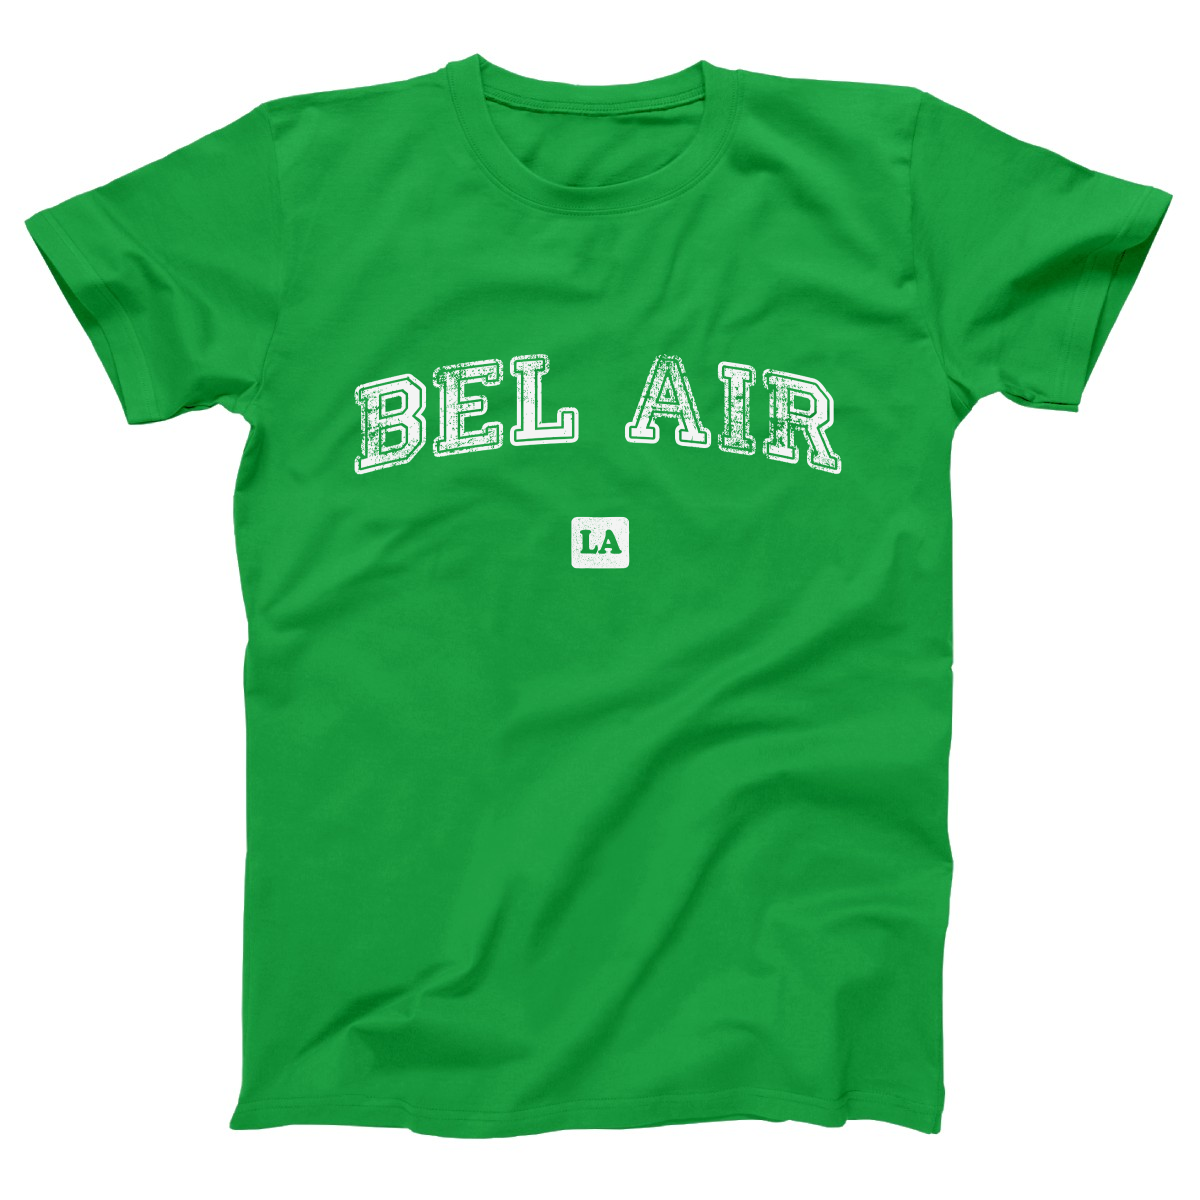 Bel Air LA Represent Women's T-shirt | Green